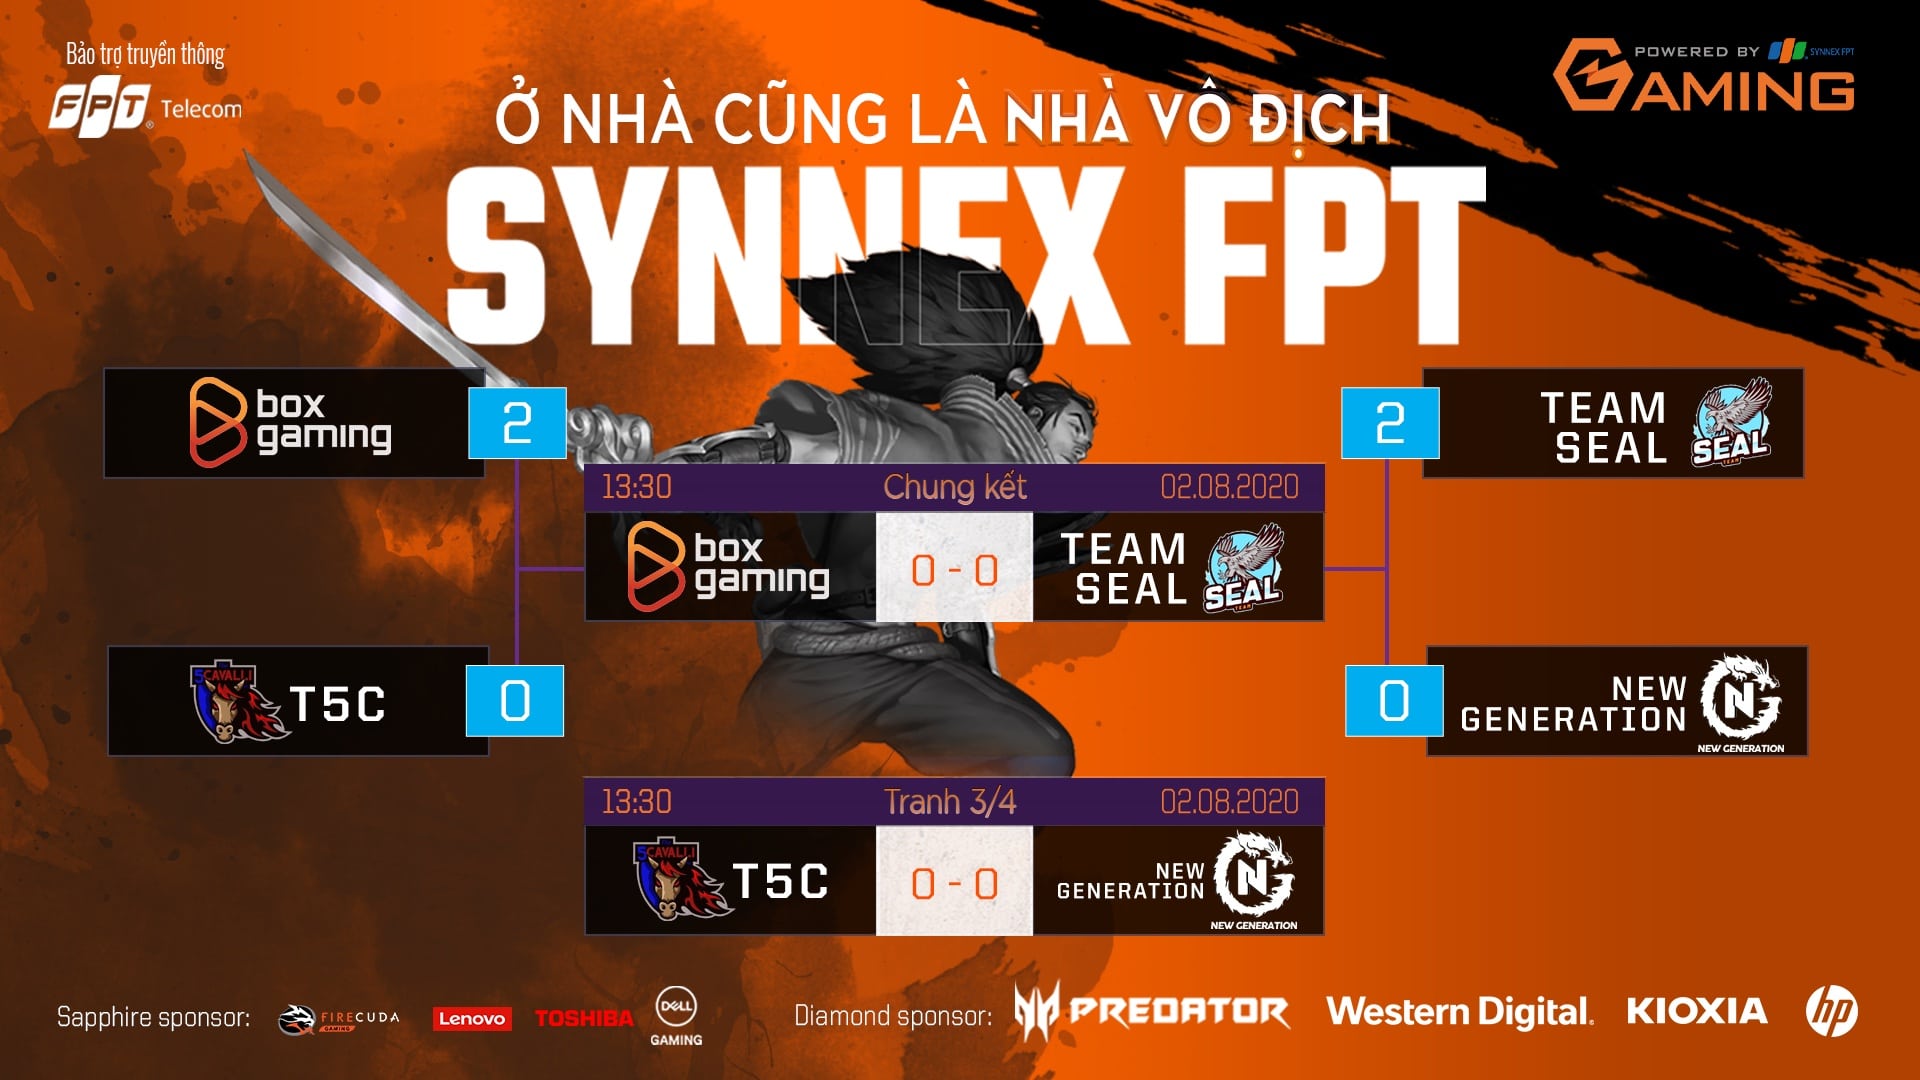 Box Gaming lên ngôi vô địch đầy thuyết phục giải đấu Synnex FPT “Ở nhà cũng là nhà vô địch”